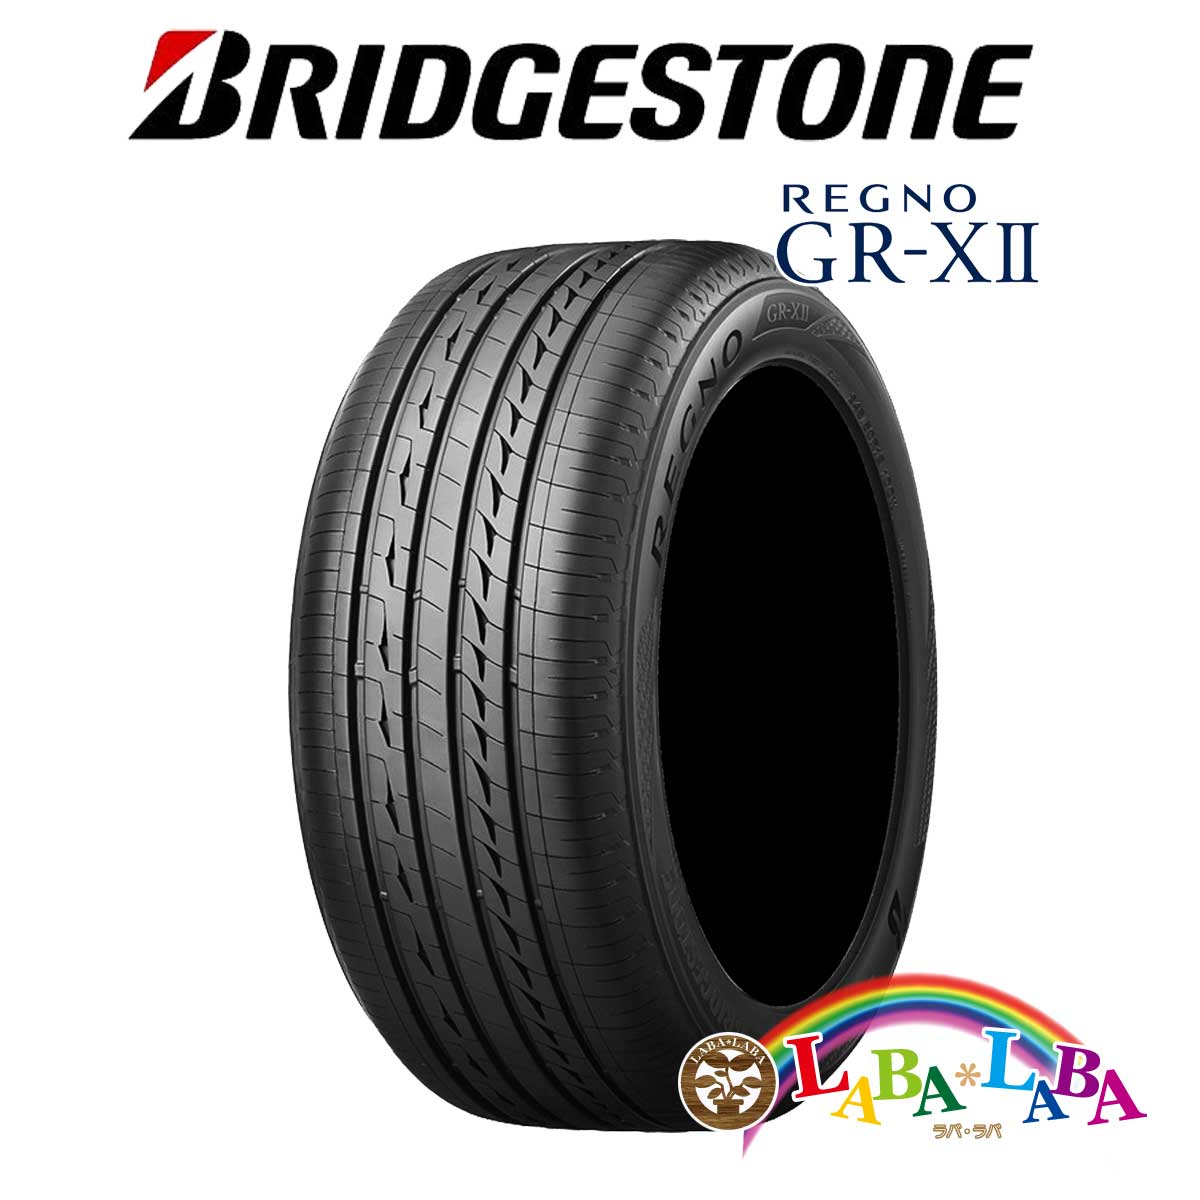 送料無料 国産タイヤ サマータイヤ 新品 タイヤのみ 2本SET BRIDGESTONE ブリヂストン GR-X2 55R17 爆買い送料無料 GRX2 97W レグノ REGNO 225 2本セット